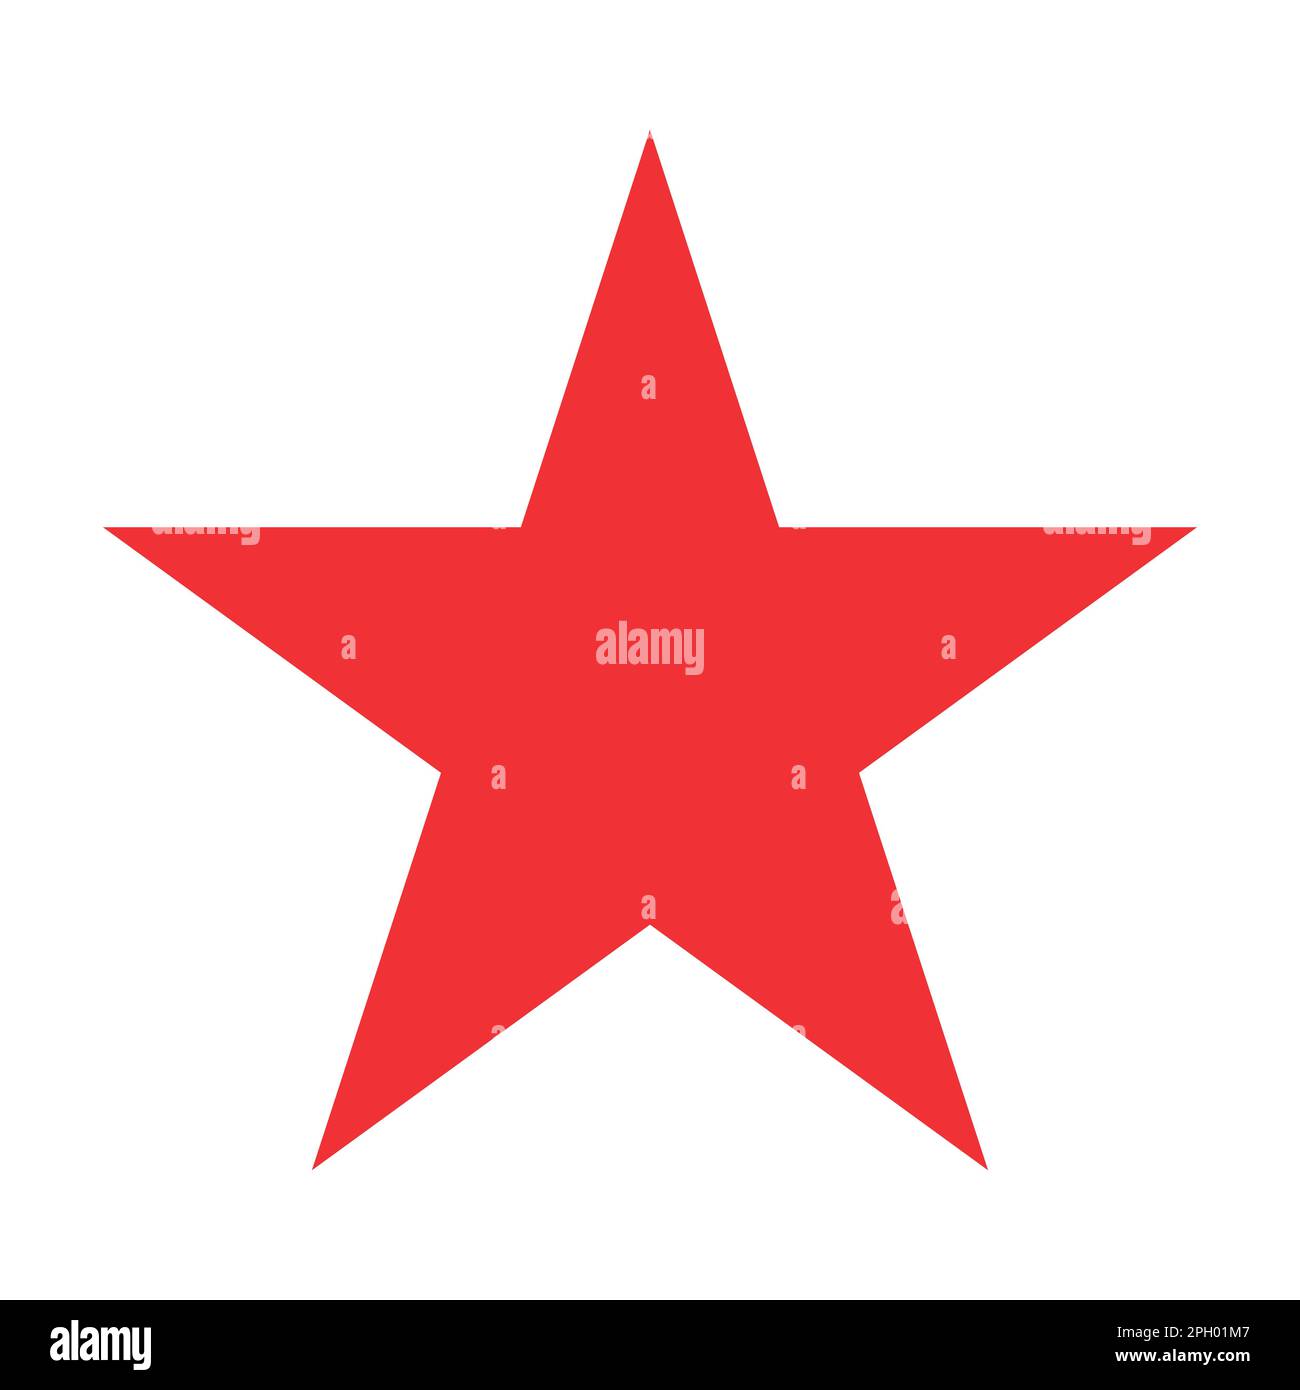 simbolo rosso a forma di stella, illustrazione vettoriale di una stella semplice a cinque punte Illustrazione Vettoriale